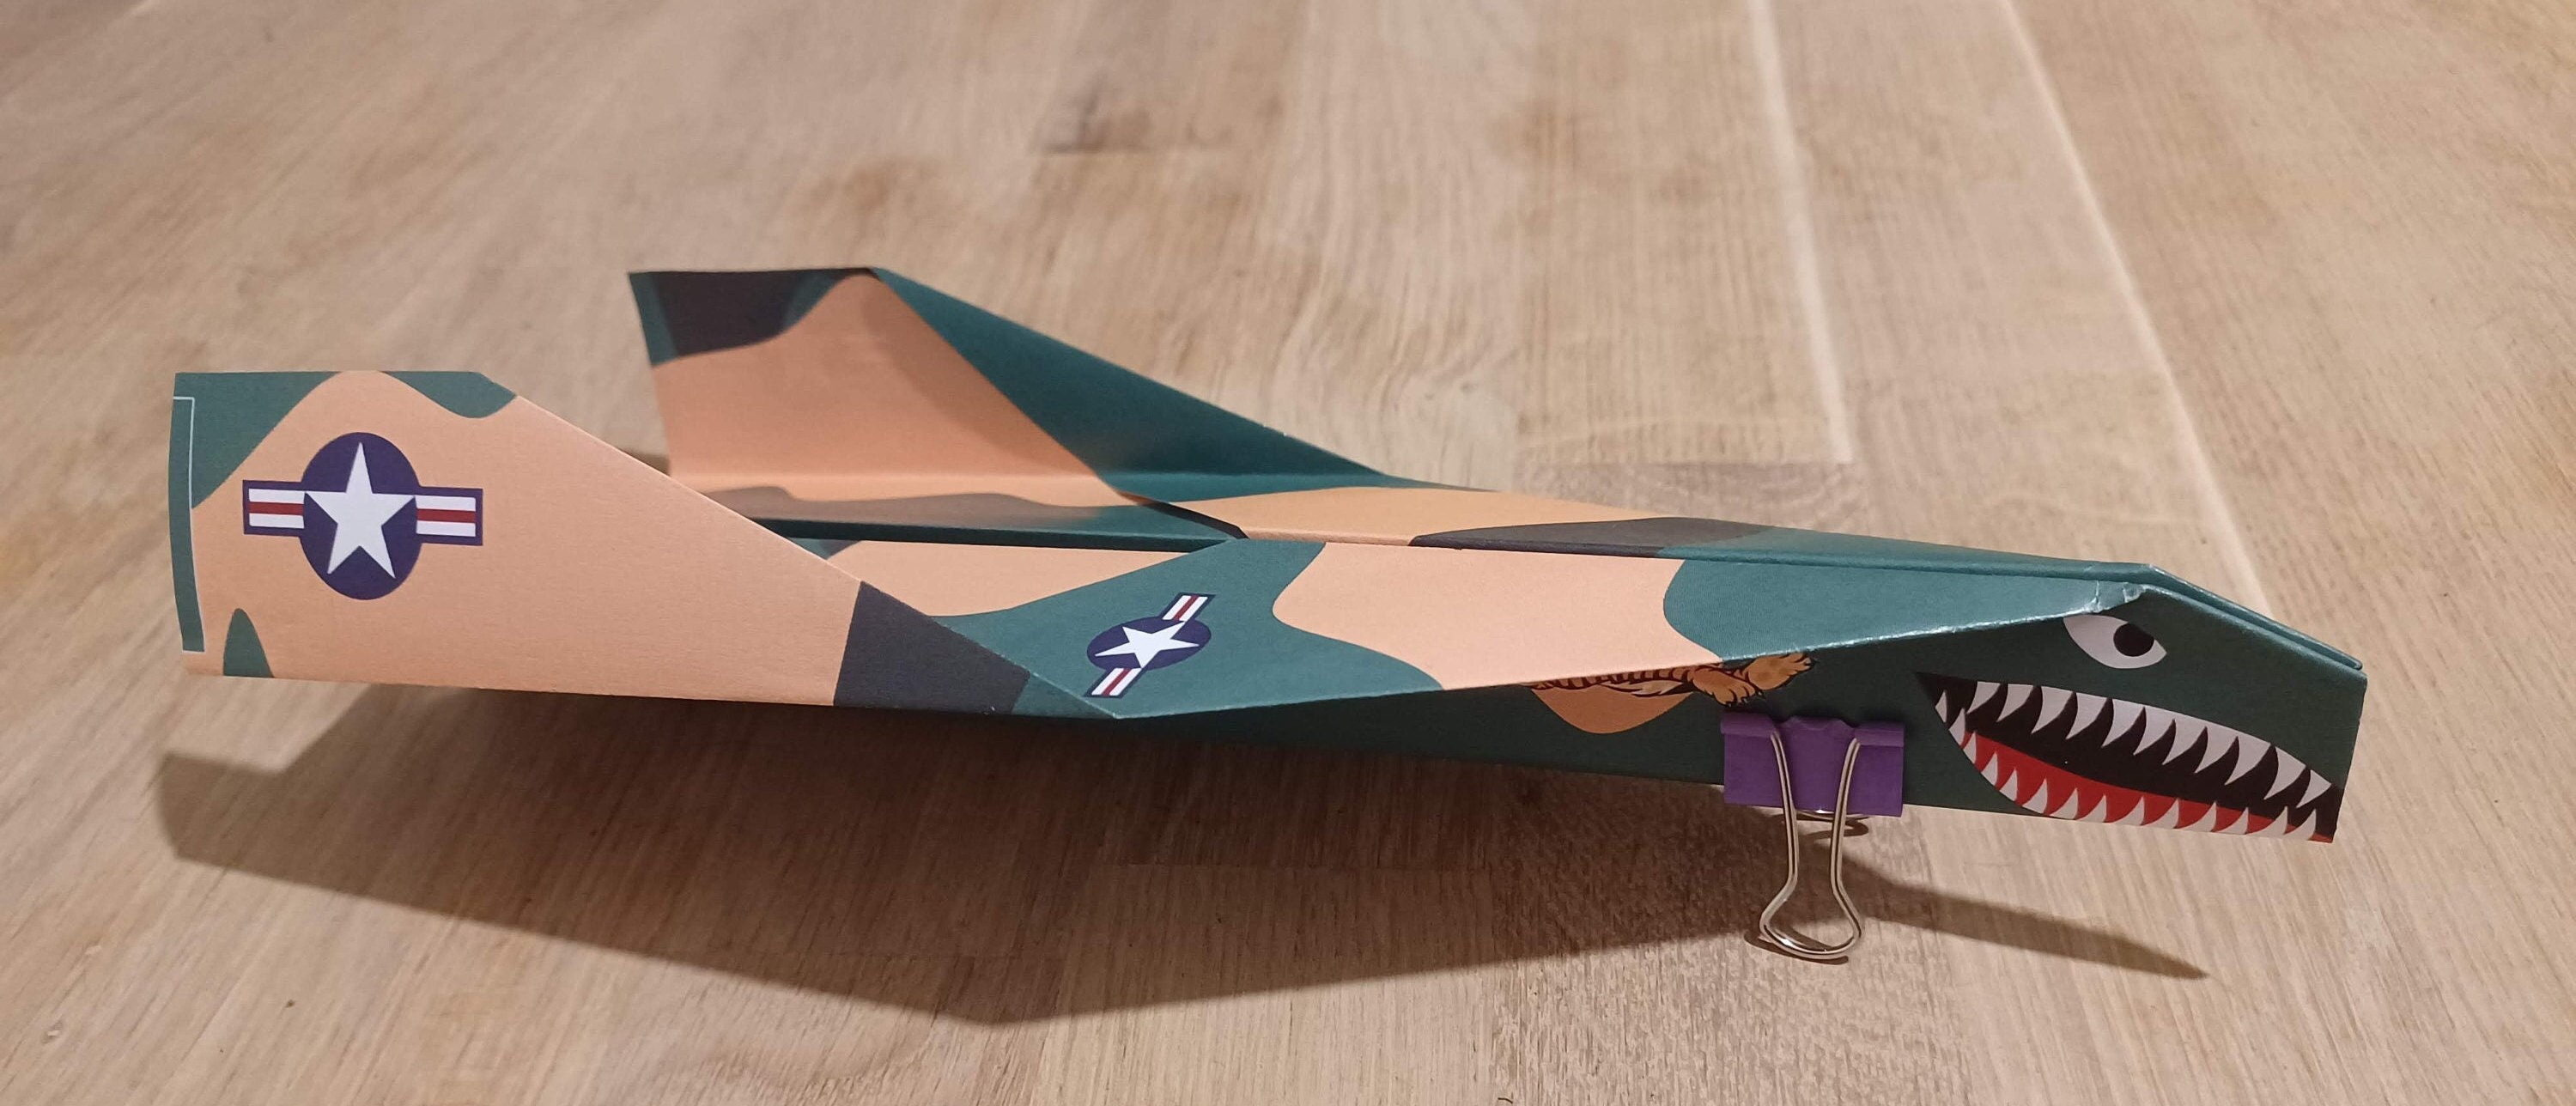 DIY Candy Bomber Paper Craft Aeroplane Model- Craft Kit